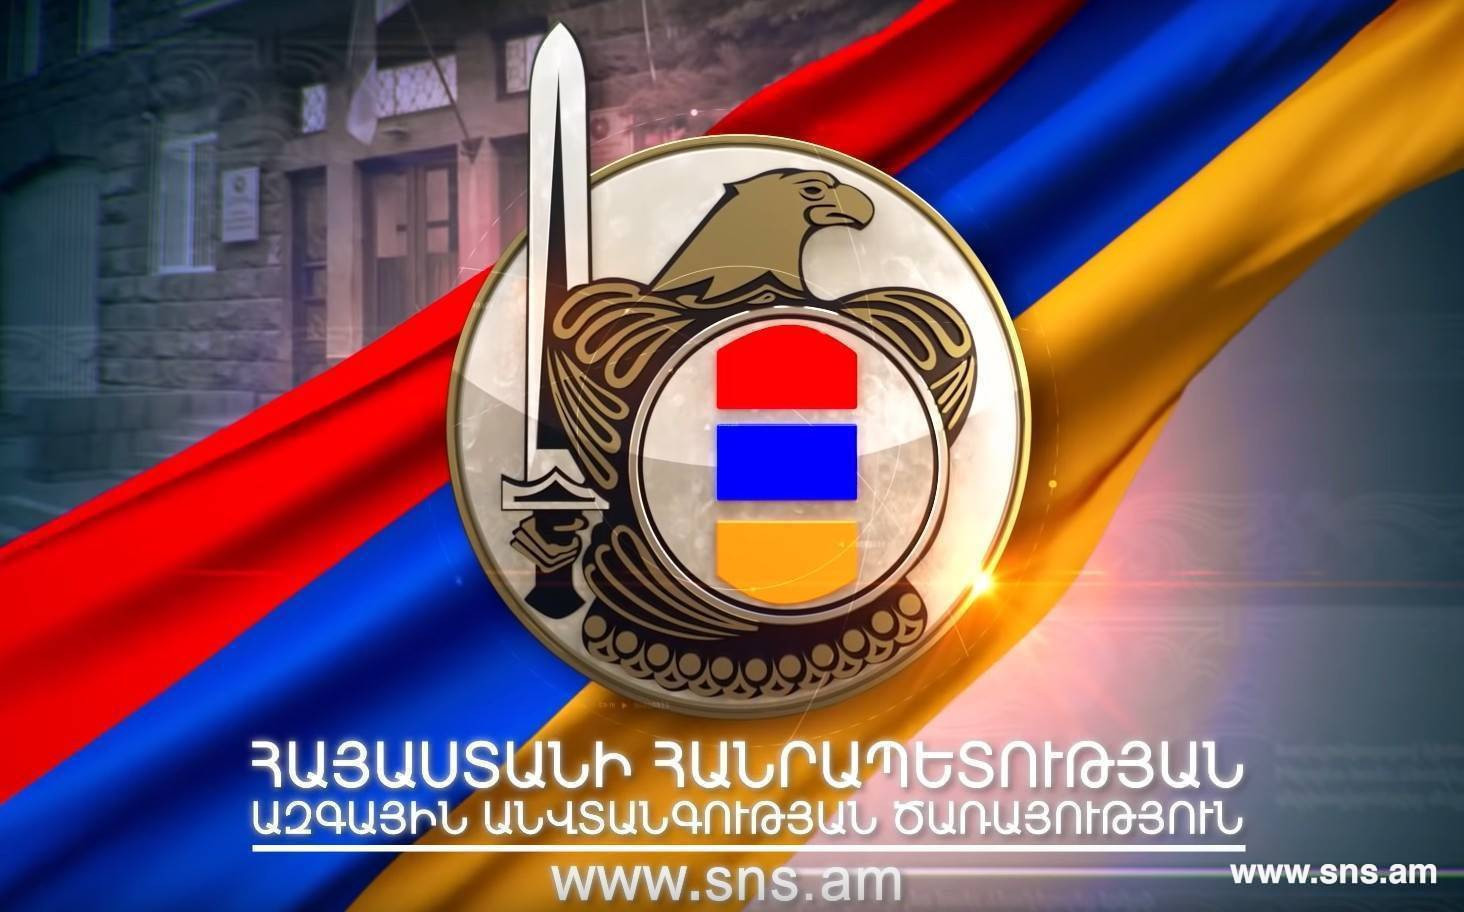 Azerbaycan istihbarat servisi Ermenistan’dan bilgiler elde etmeye çalıştı